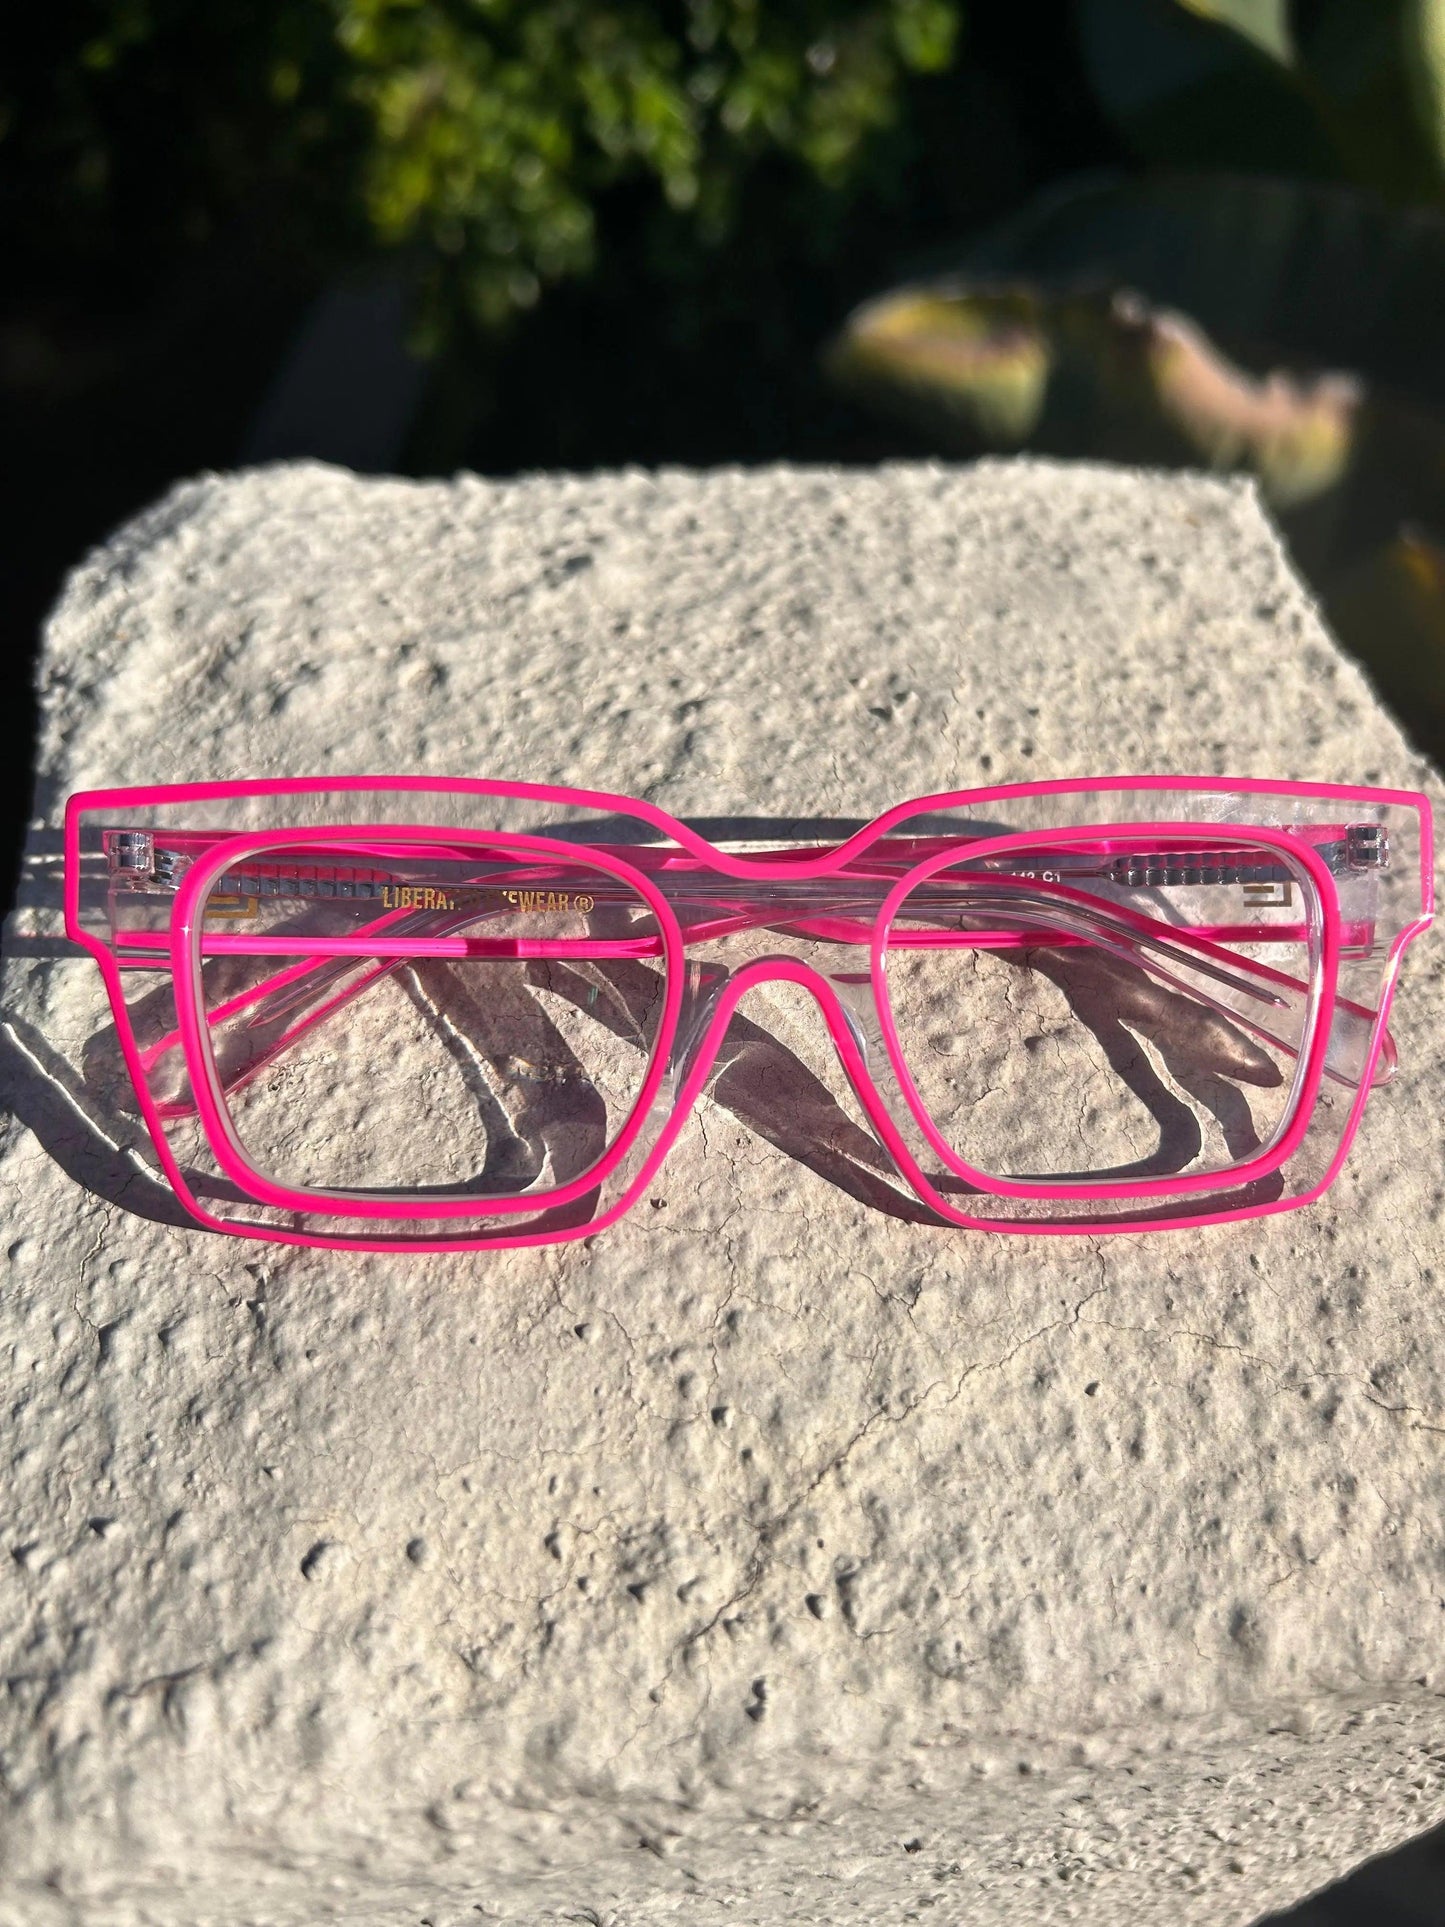 Malibu - Liberated Eyewear, Inc. designer pink eyeglasses for women